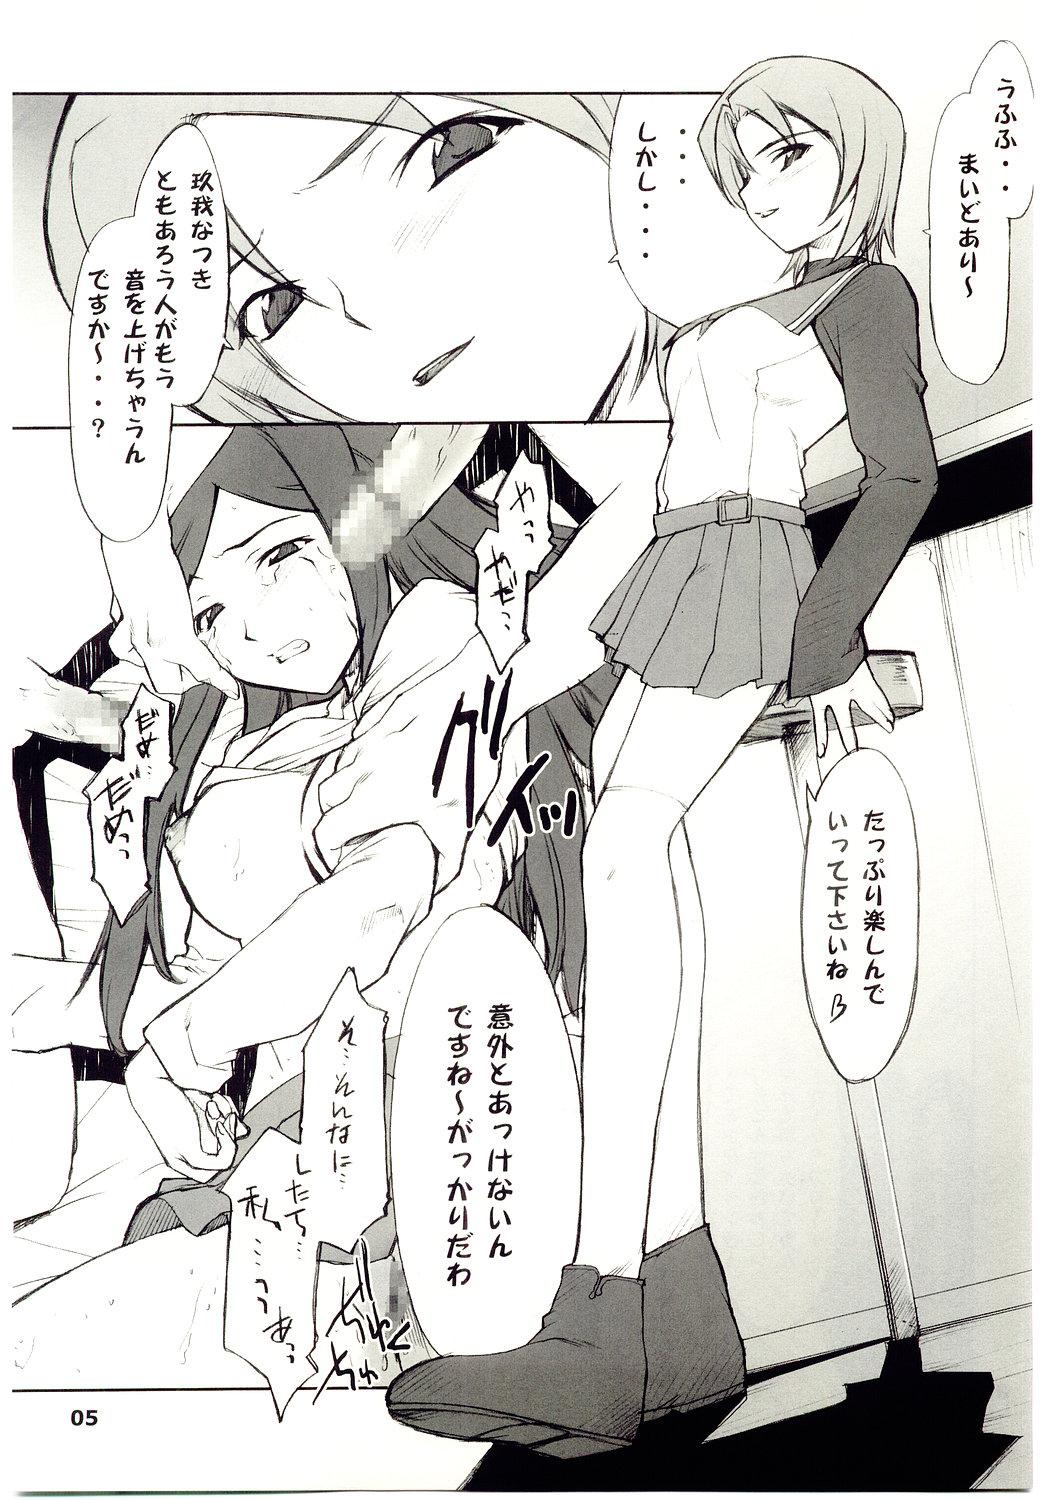 Hardcore Kuga-chan to Iroiro - Mai-hime Kitchen - Page 4